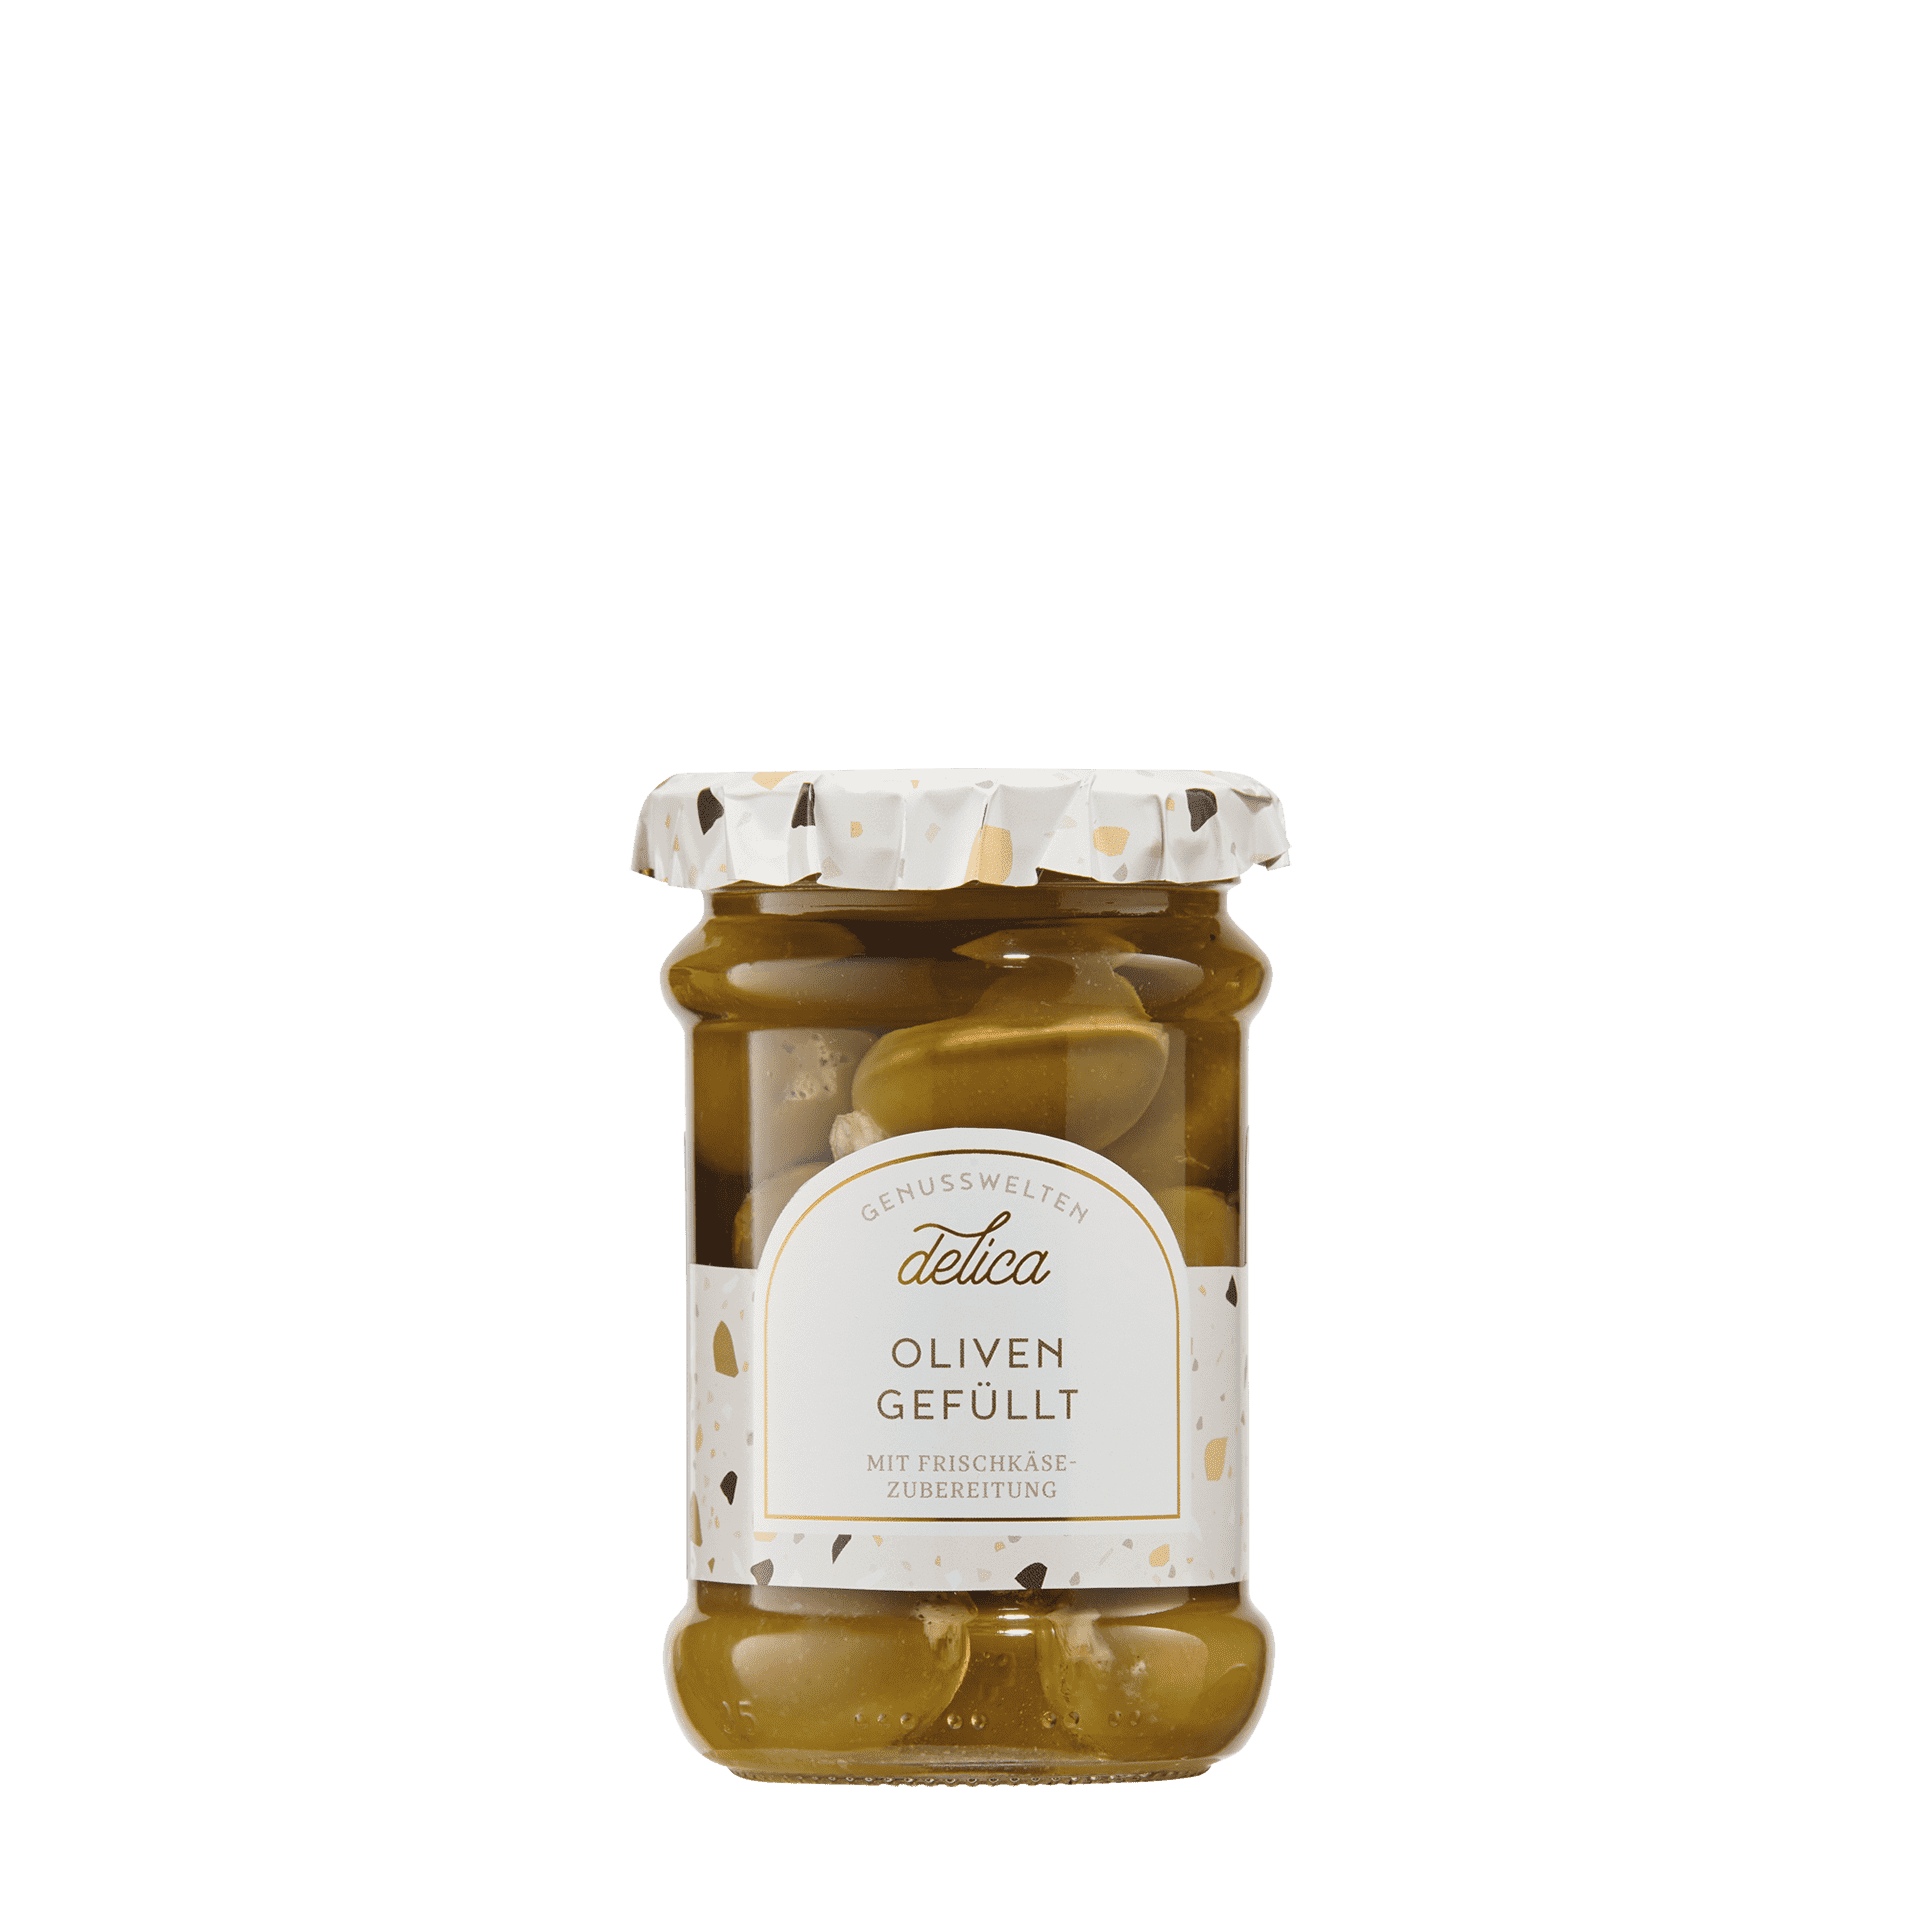 Oliven - gefüllt mit Frischkäsezubereitung